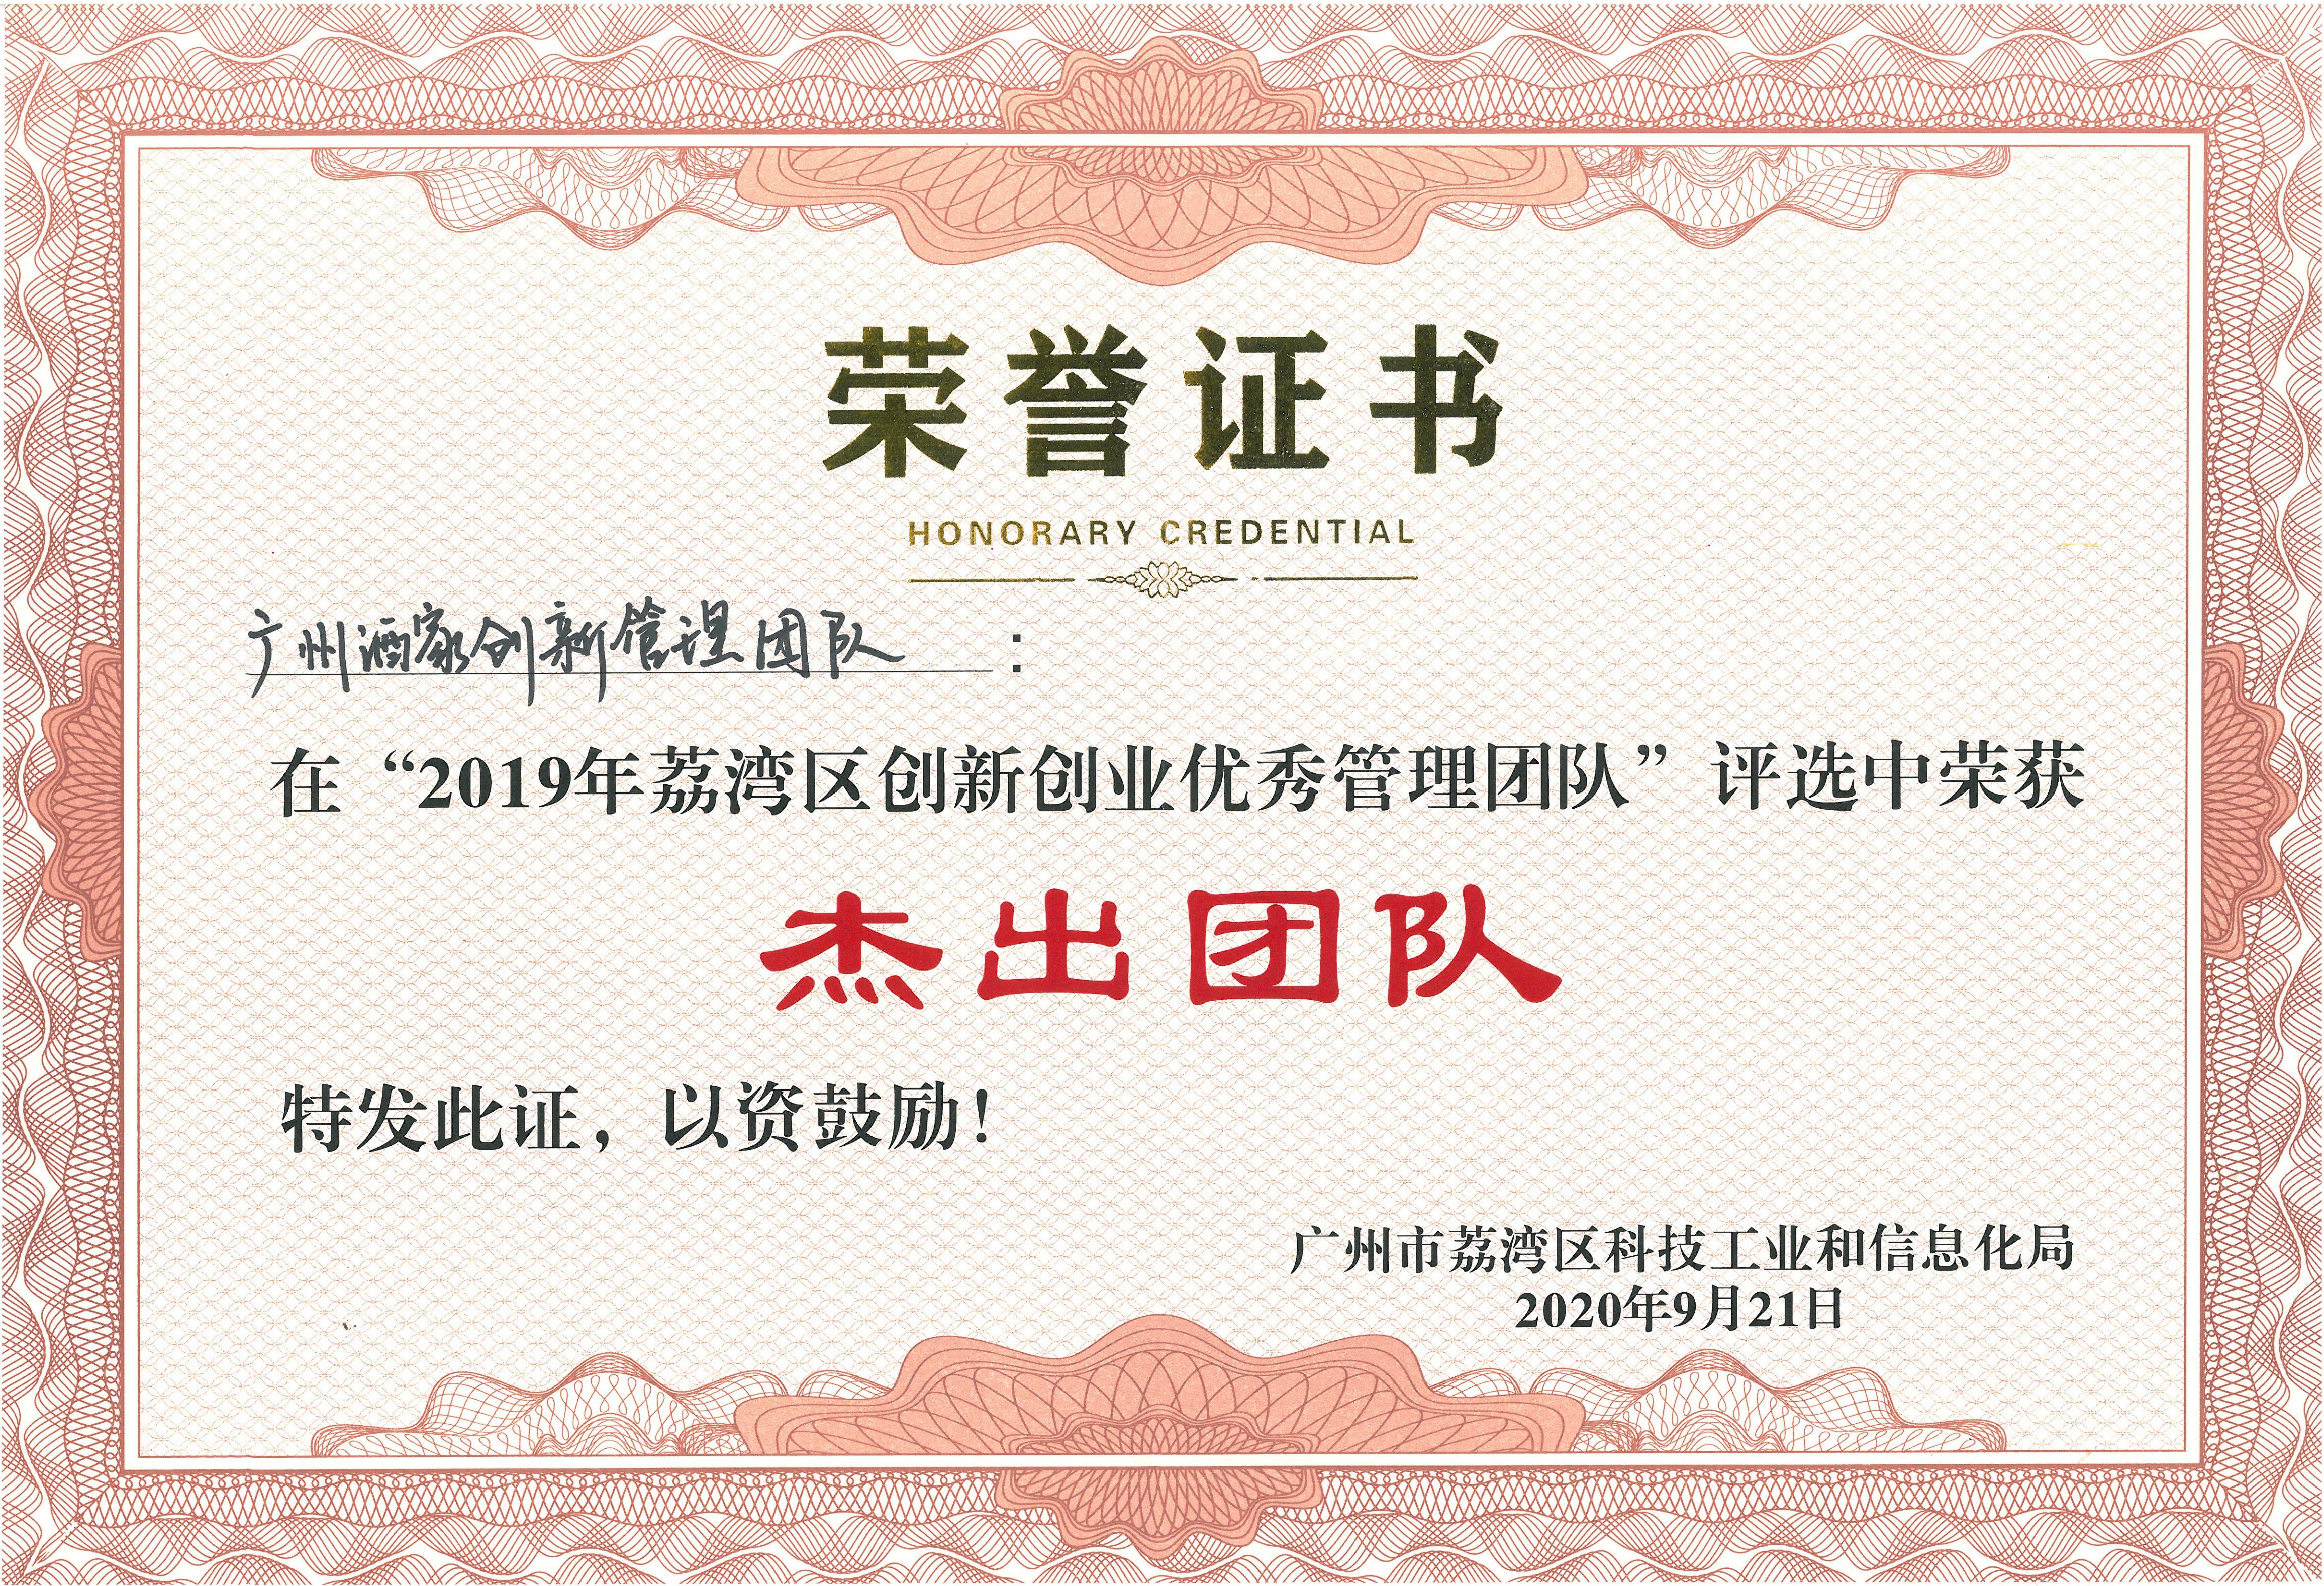 广州酒家在2019年荔湾区创新创业优秀管理 团队评选中荣获“杰出团队”称号